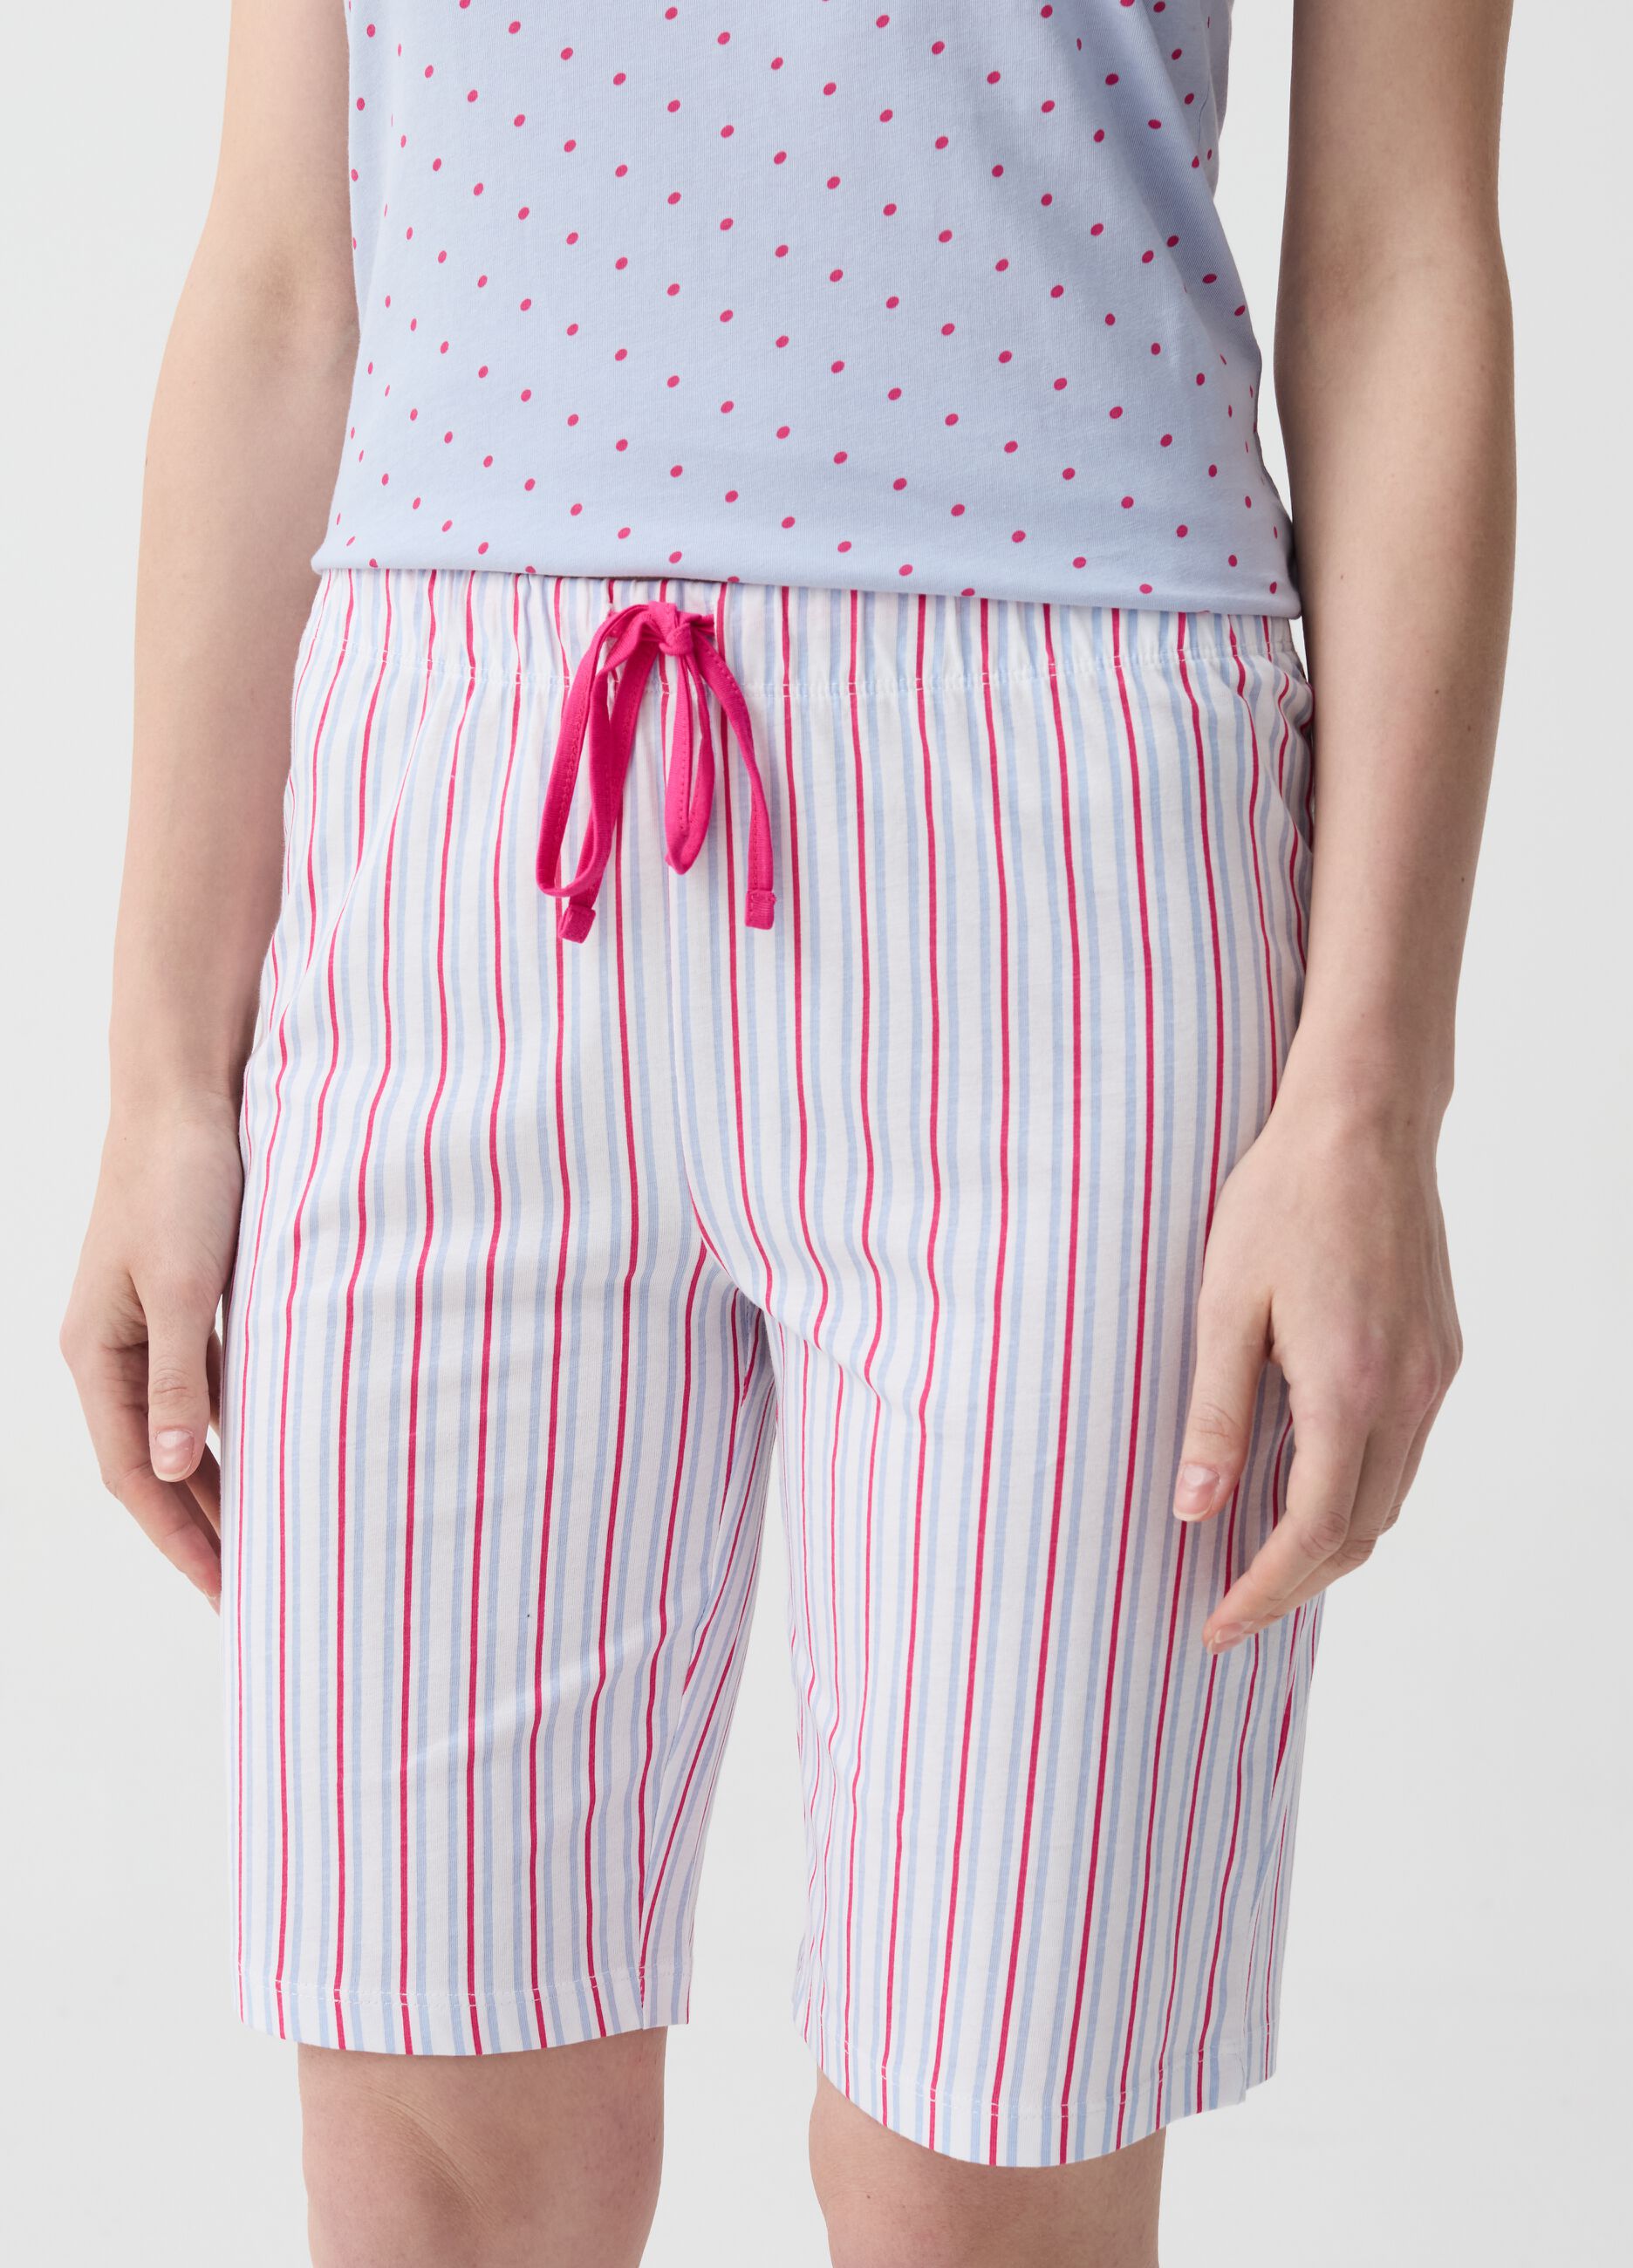 Pantalón pijama corto de rayas multicolor